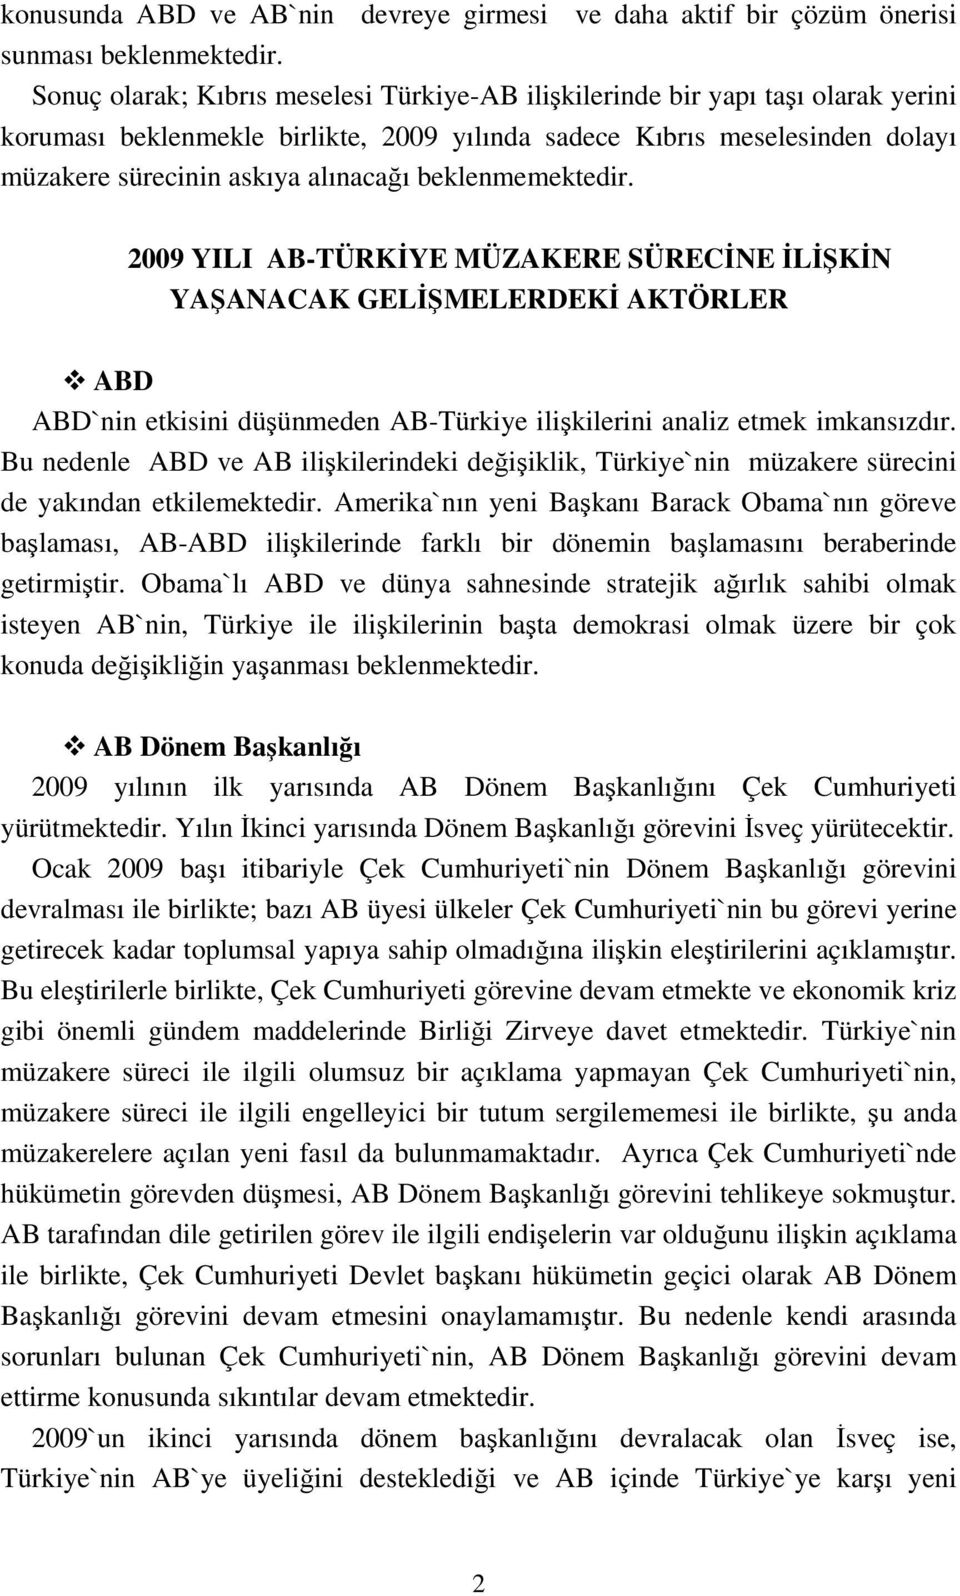 beklenmemektedir. 2009 YILI AB-TÜRKİYE MÜZAKERE SÜRECİNE İLİŞKİN YAŞANACAK GELİŞMELERDEKİ AKTÖRLER ABD ABD`nin etkisini düşünmeden AB-Türkiye ilişkilerini analiz etmek imkansızdır.